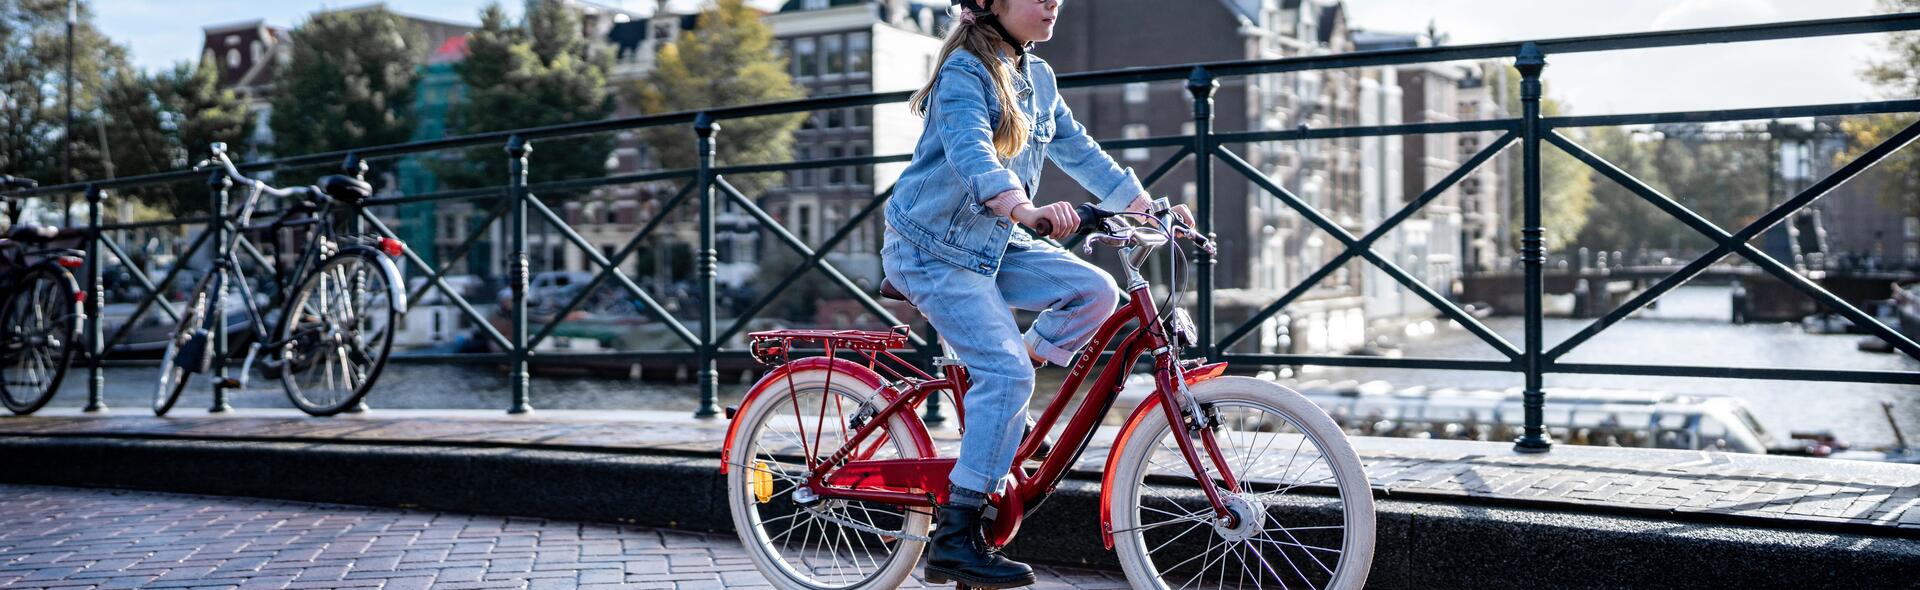 andare-in-bici-in-città-con-i-bambini